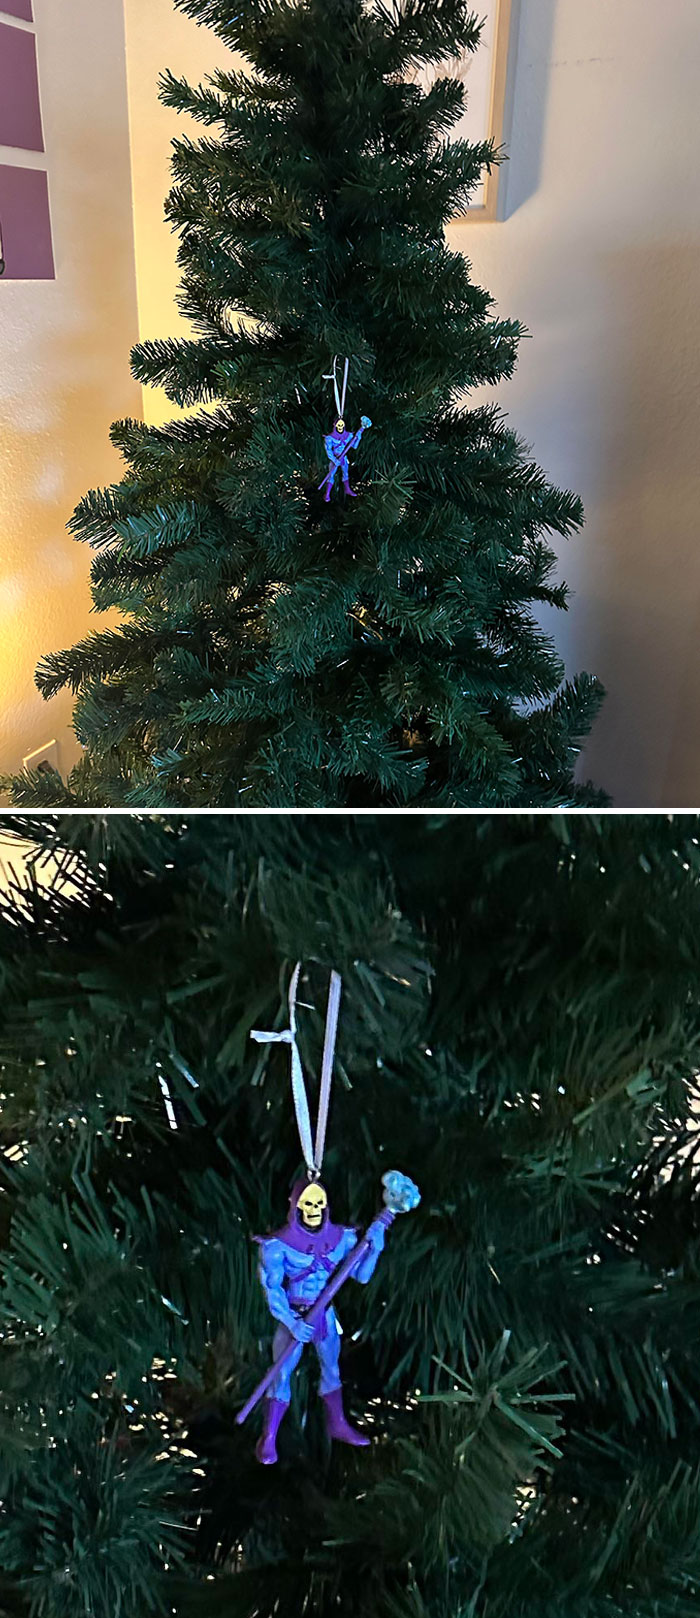 Mi novio y yo nos hemos mudado juntos y este es nuestro árbol de Navidad. Somos jóvenes y pobres